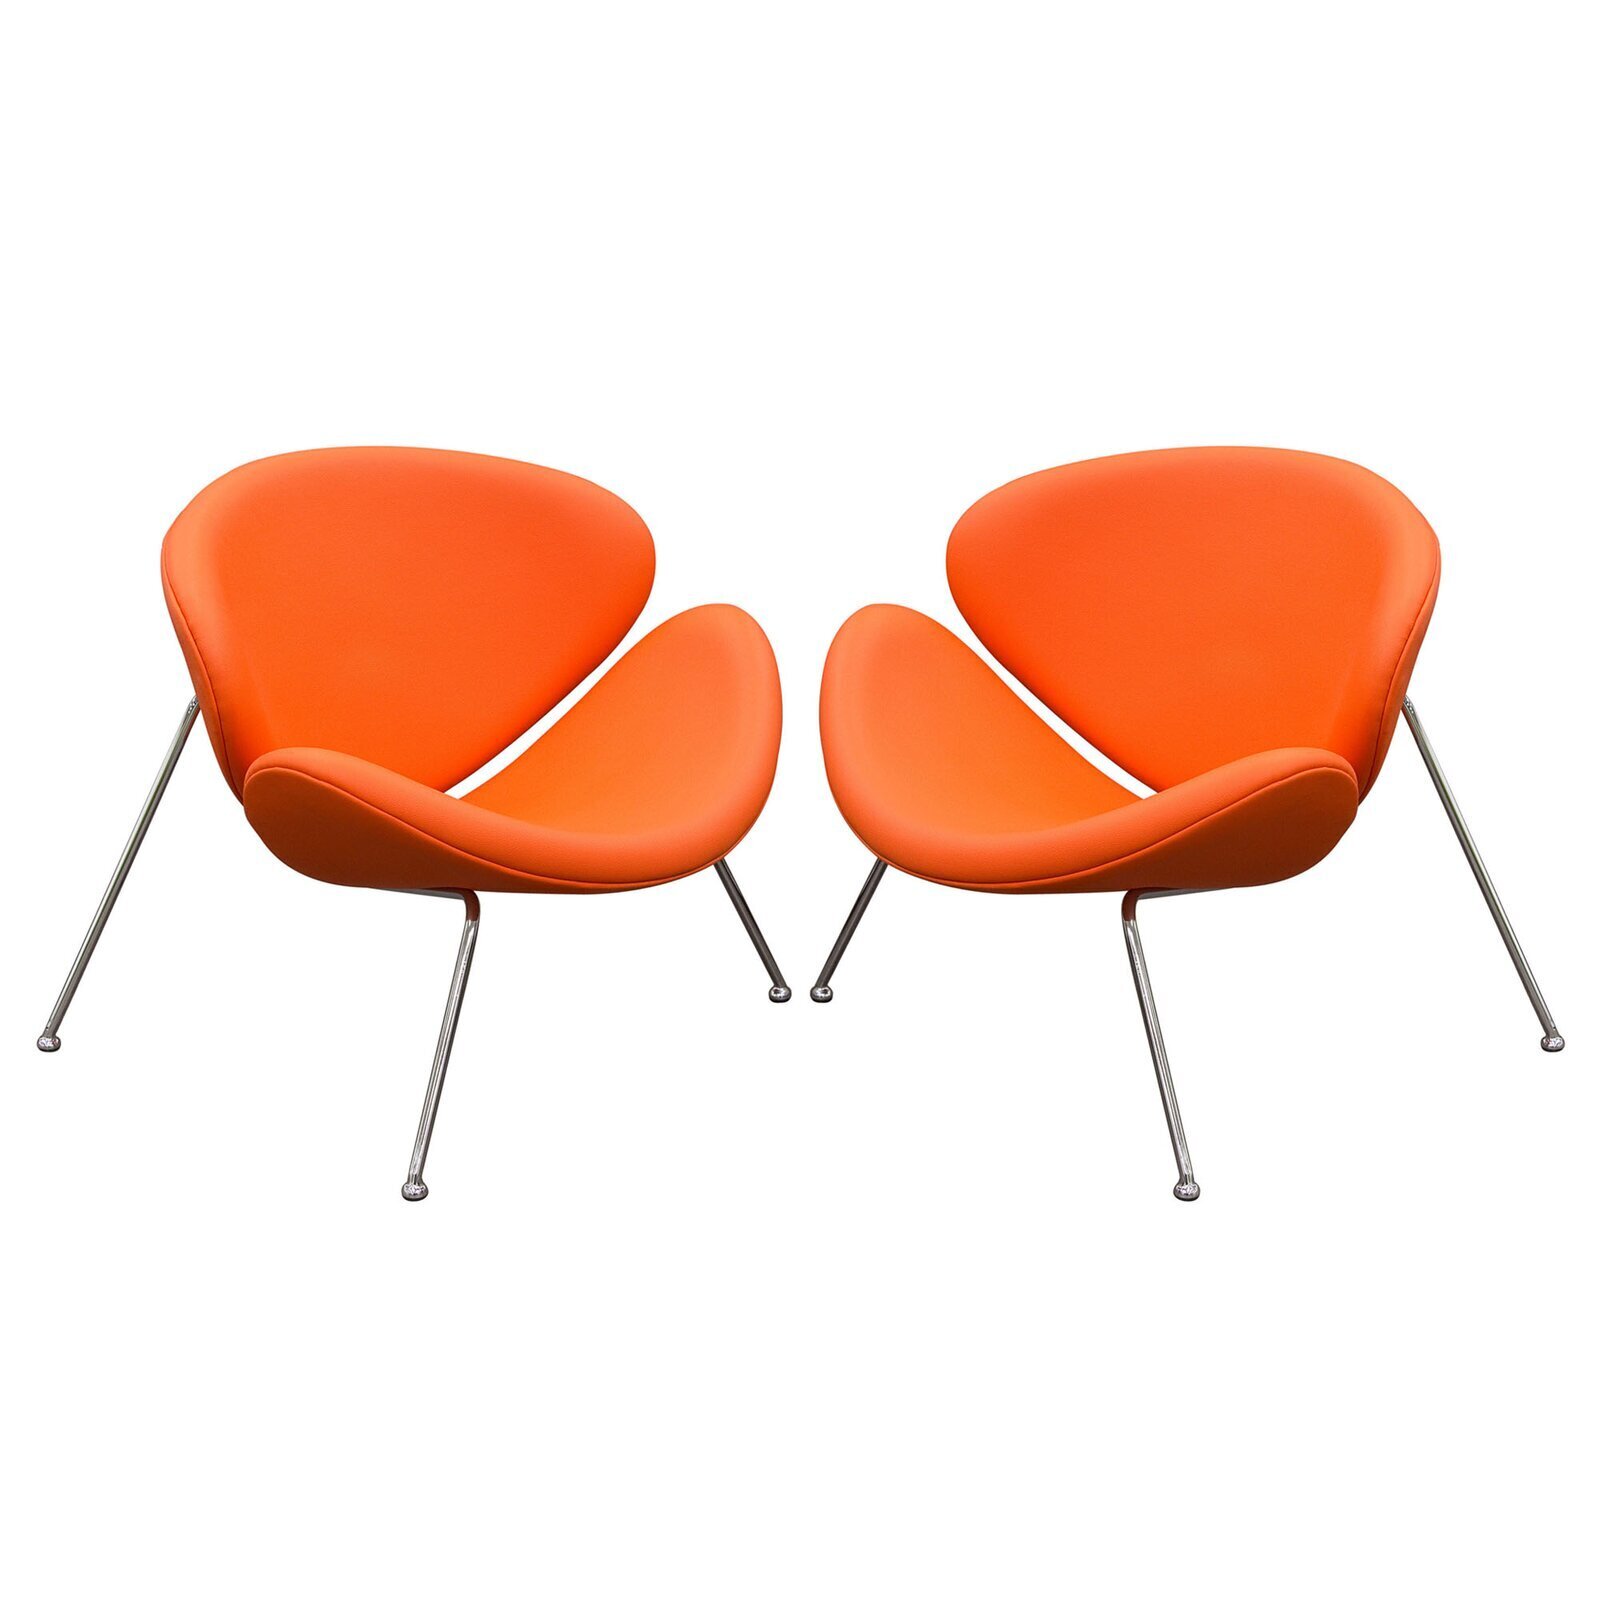 33” Wide Orange Papasan Chair Set